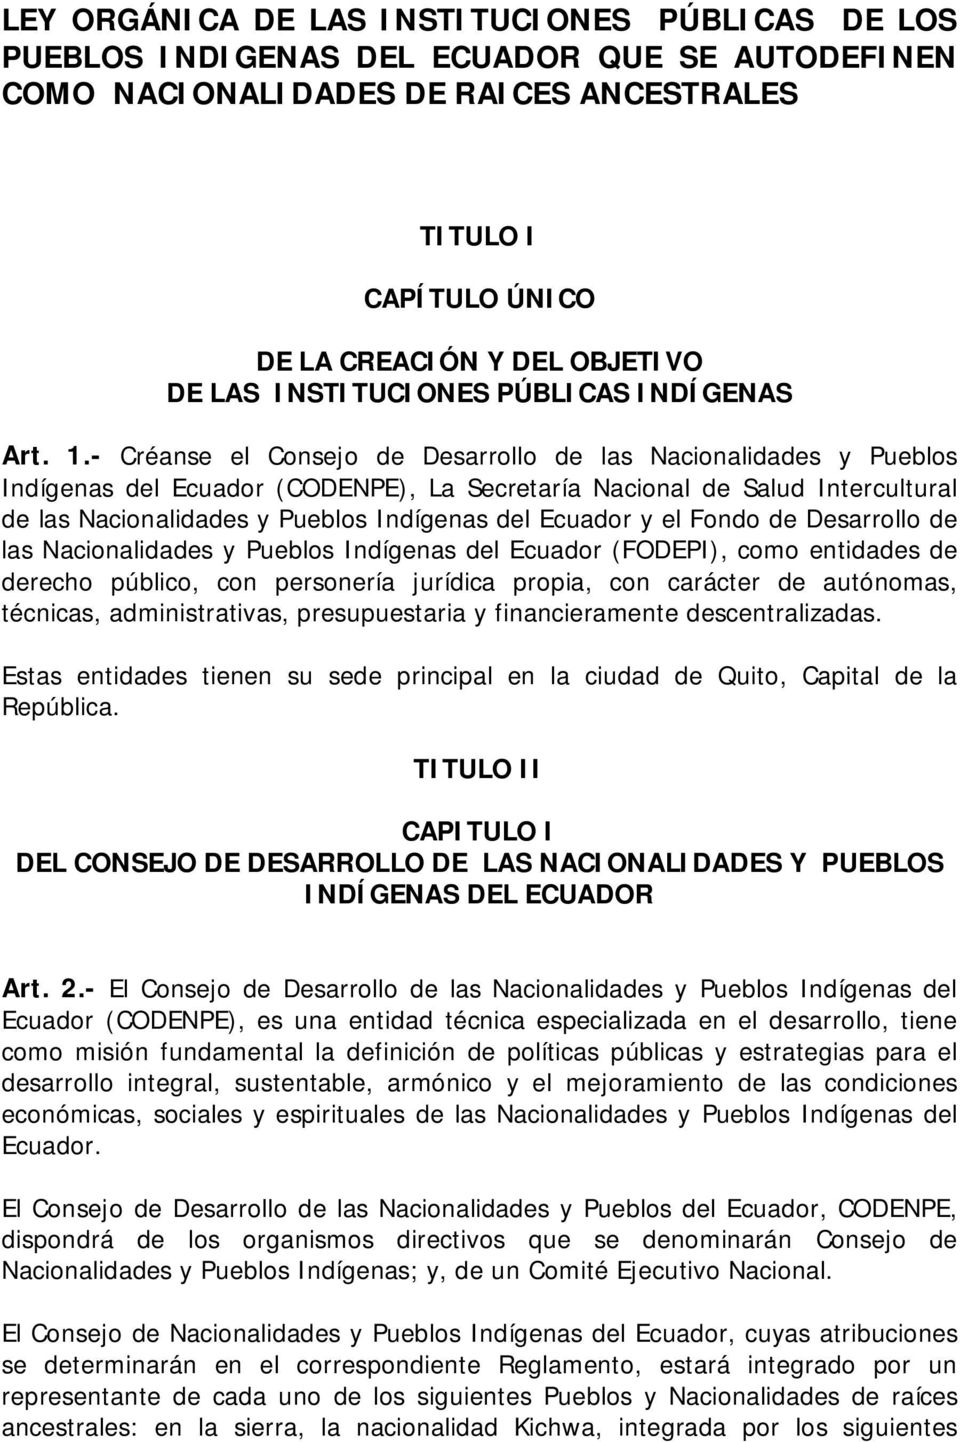 - Créanse el Consejo de Desarrollo de las Nacionalidades y Pueblos Indígenas del Ecuador (CODENPE), La Secretaría Nacional de Salud Intercultural de las Nacionalidades y Pueblos Indígenas del Ecuador